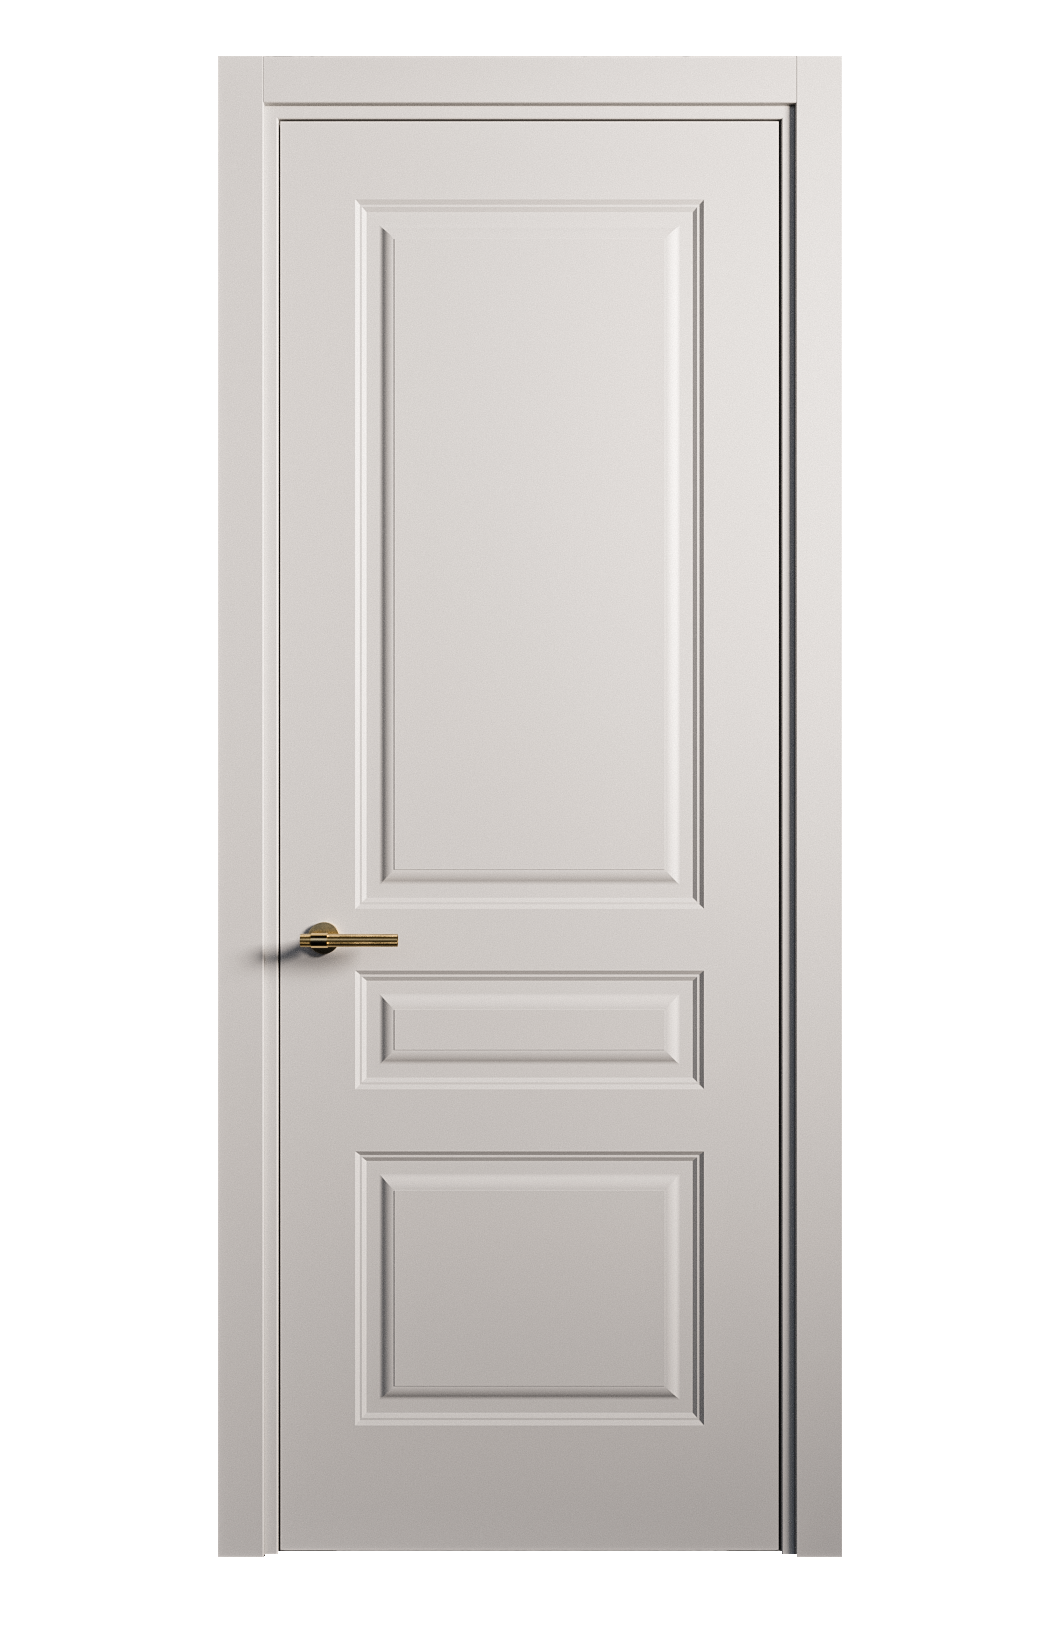 Межкомнатная дверь Вита-2 глухая эмаль ral 7047 26361